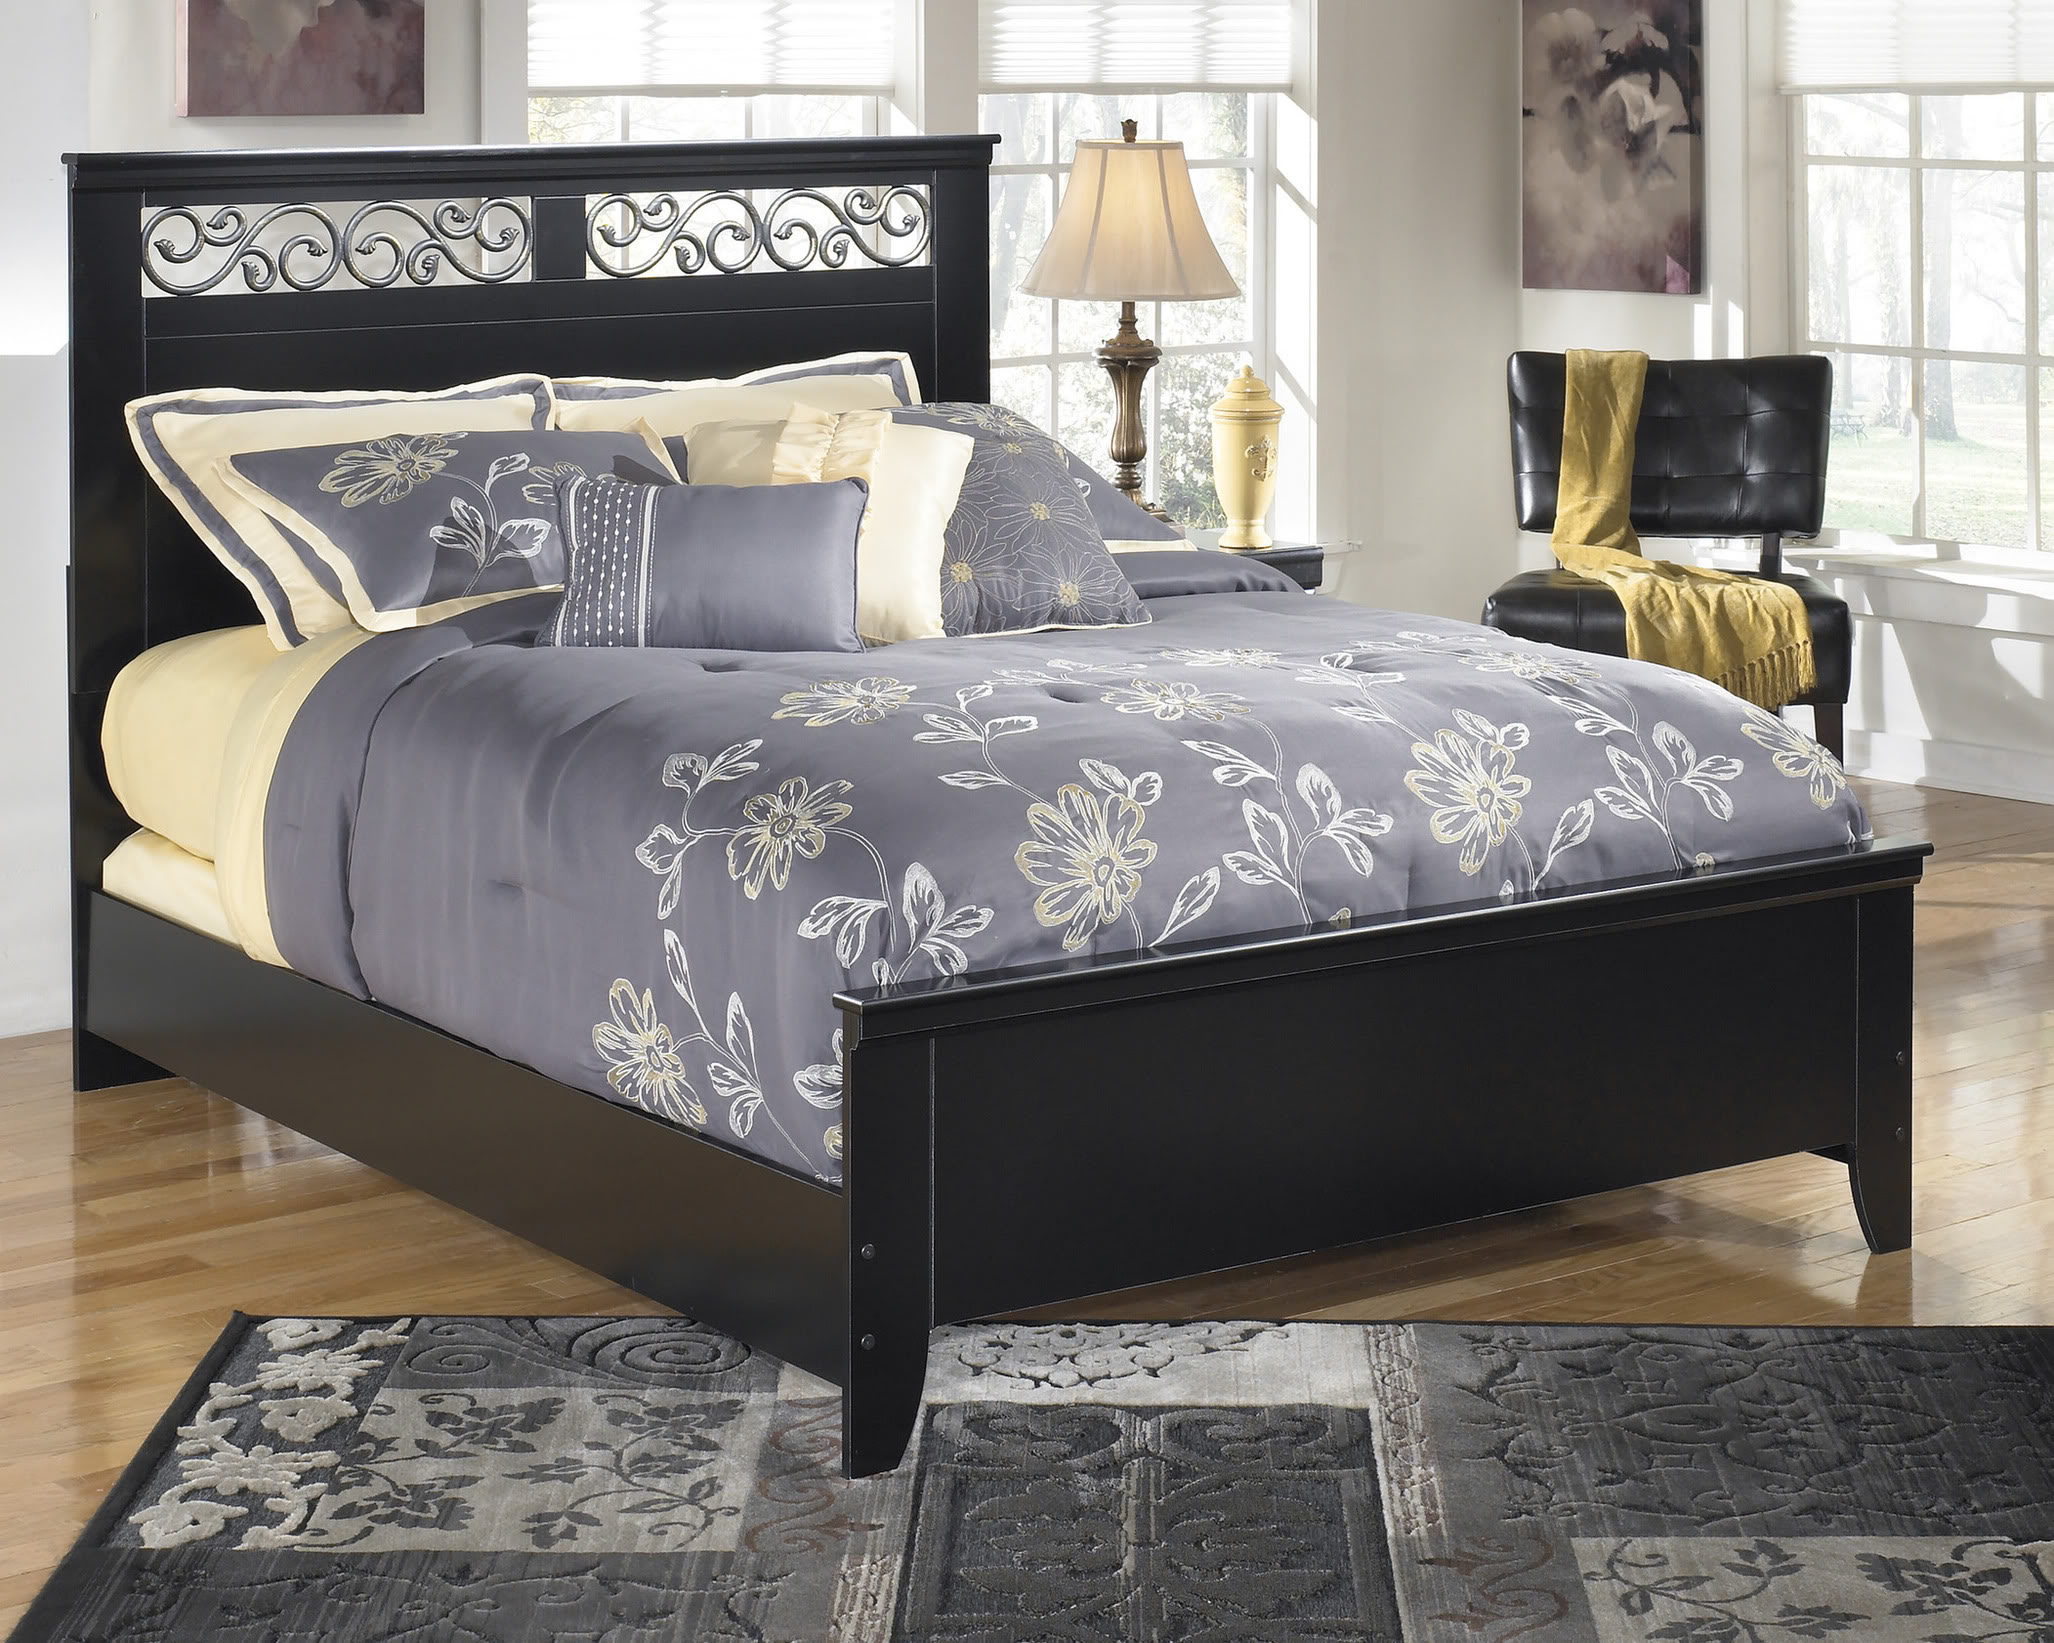 ornate bedroom furniture for sale